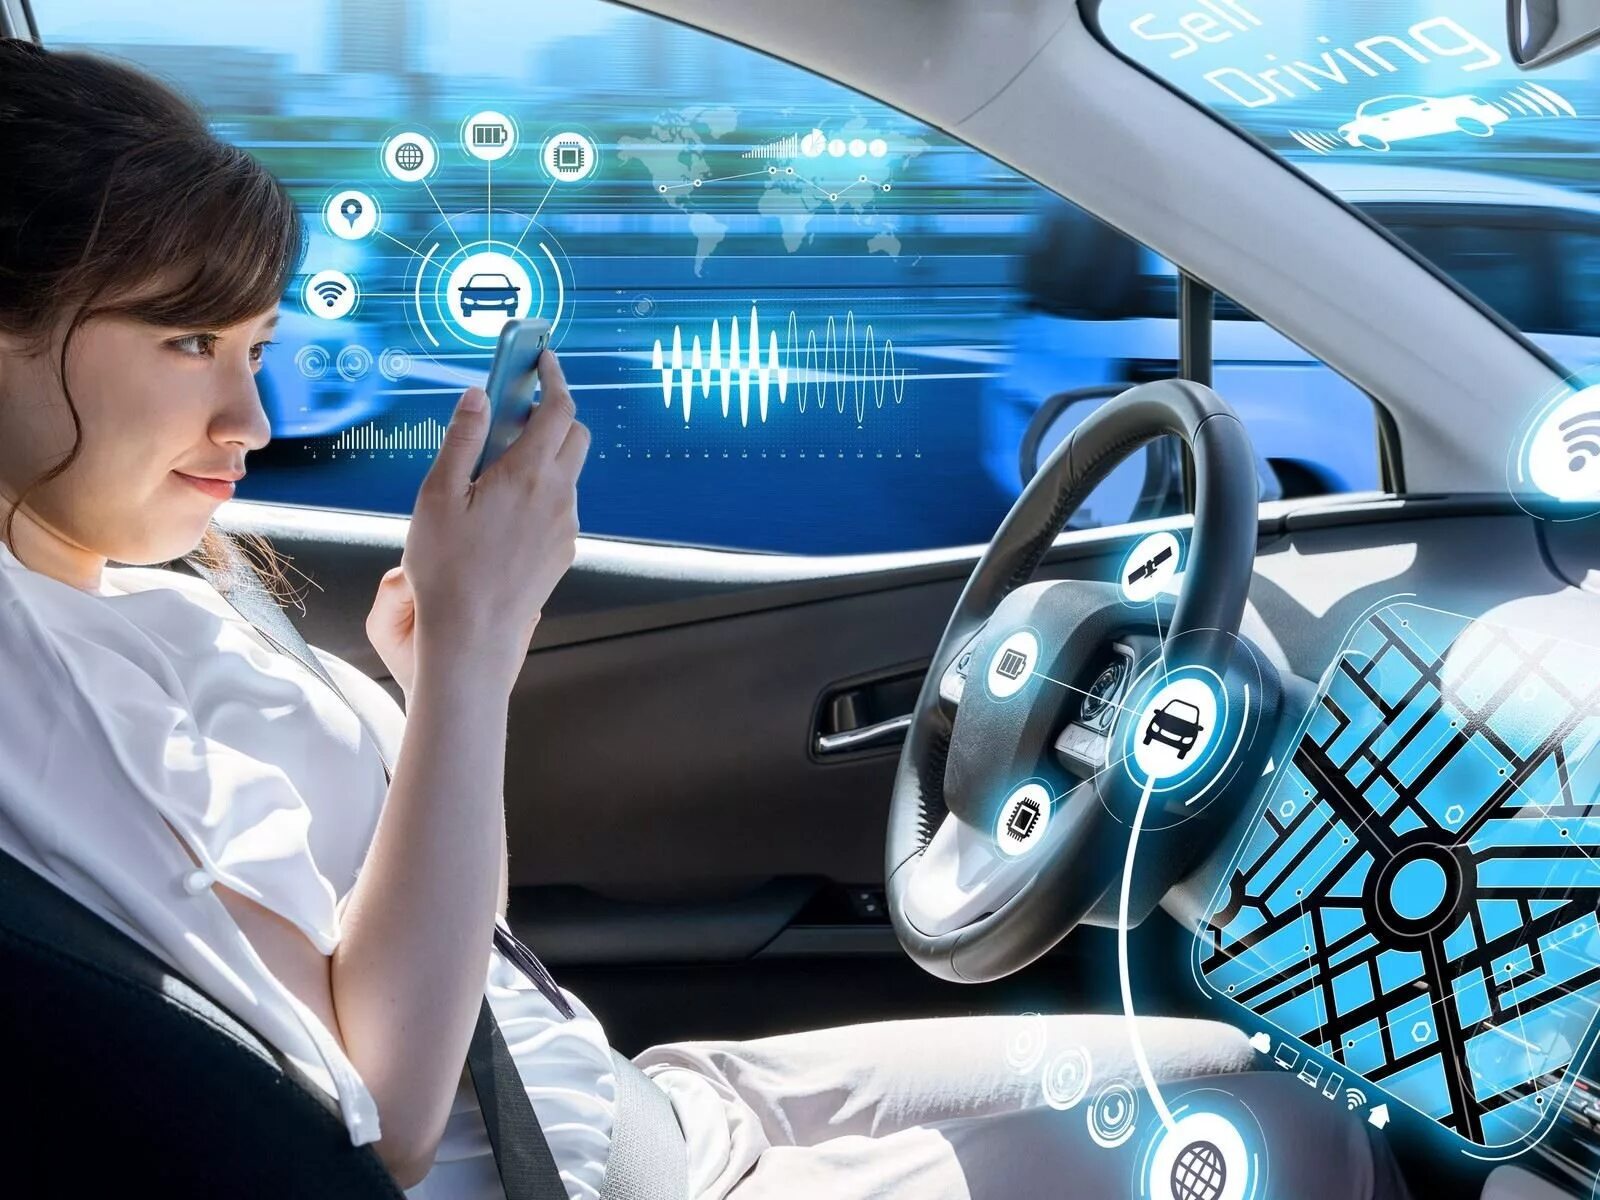 Willing car. Управление автомобилем будущего. Автомобили с искусственным интеллектом. Компьютерное зрение Тесла. Самоуправляемые автомобили и будущее транспорта.